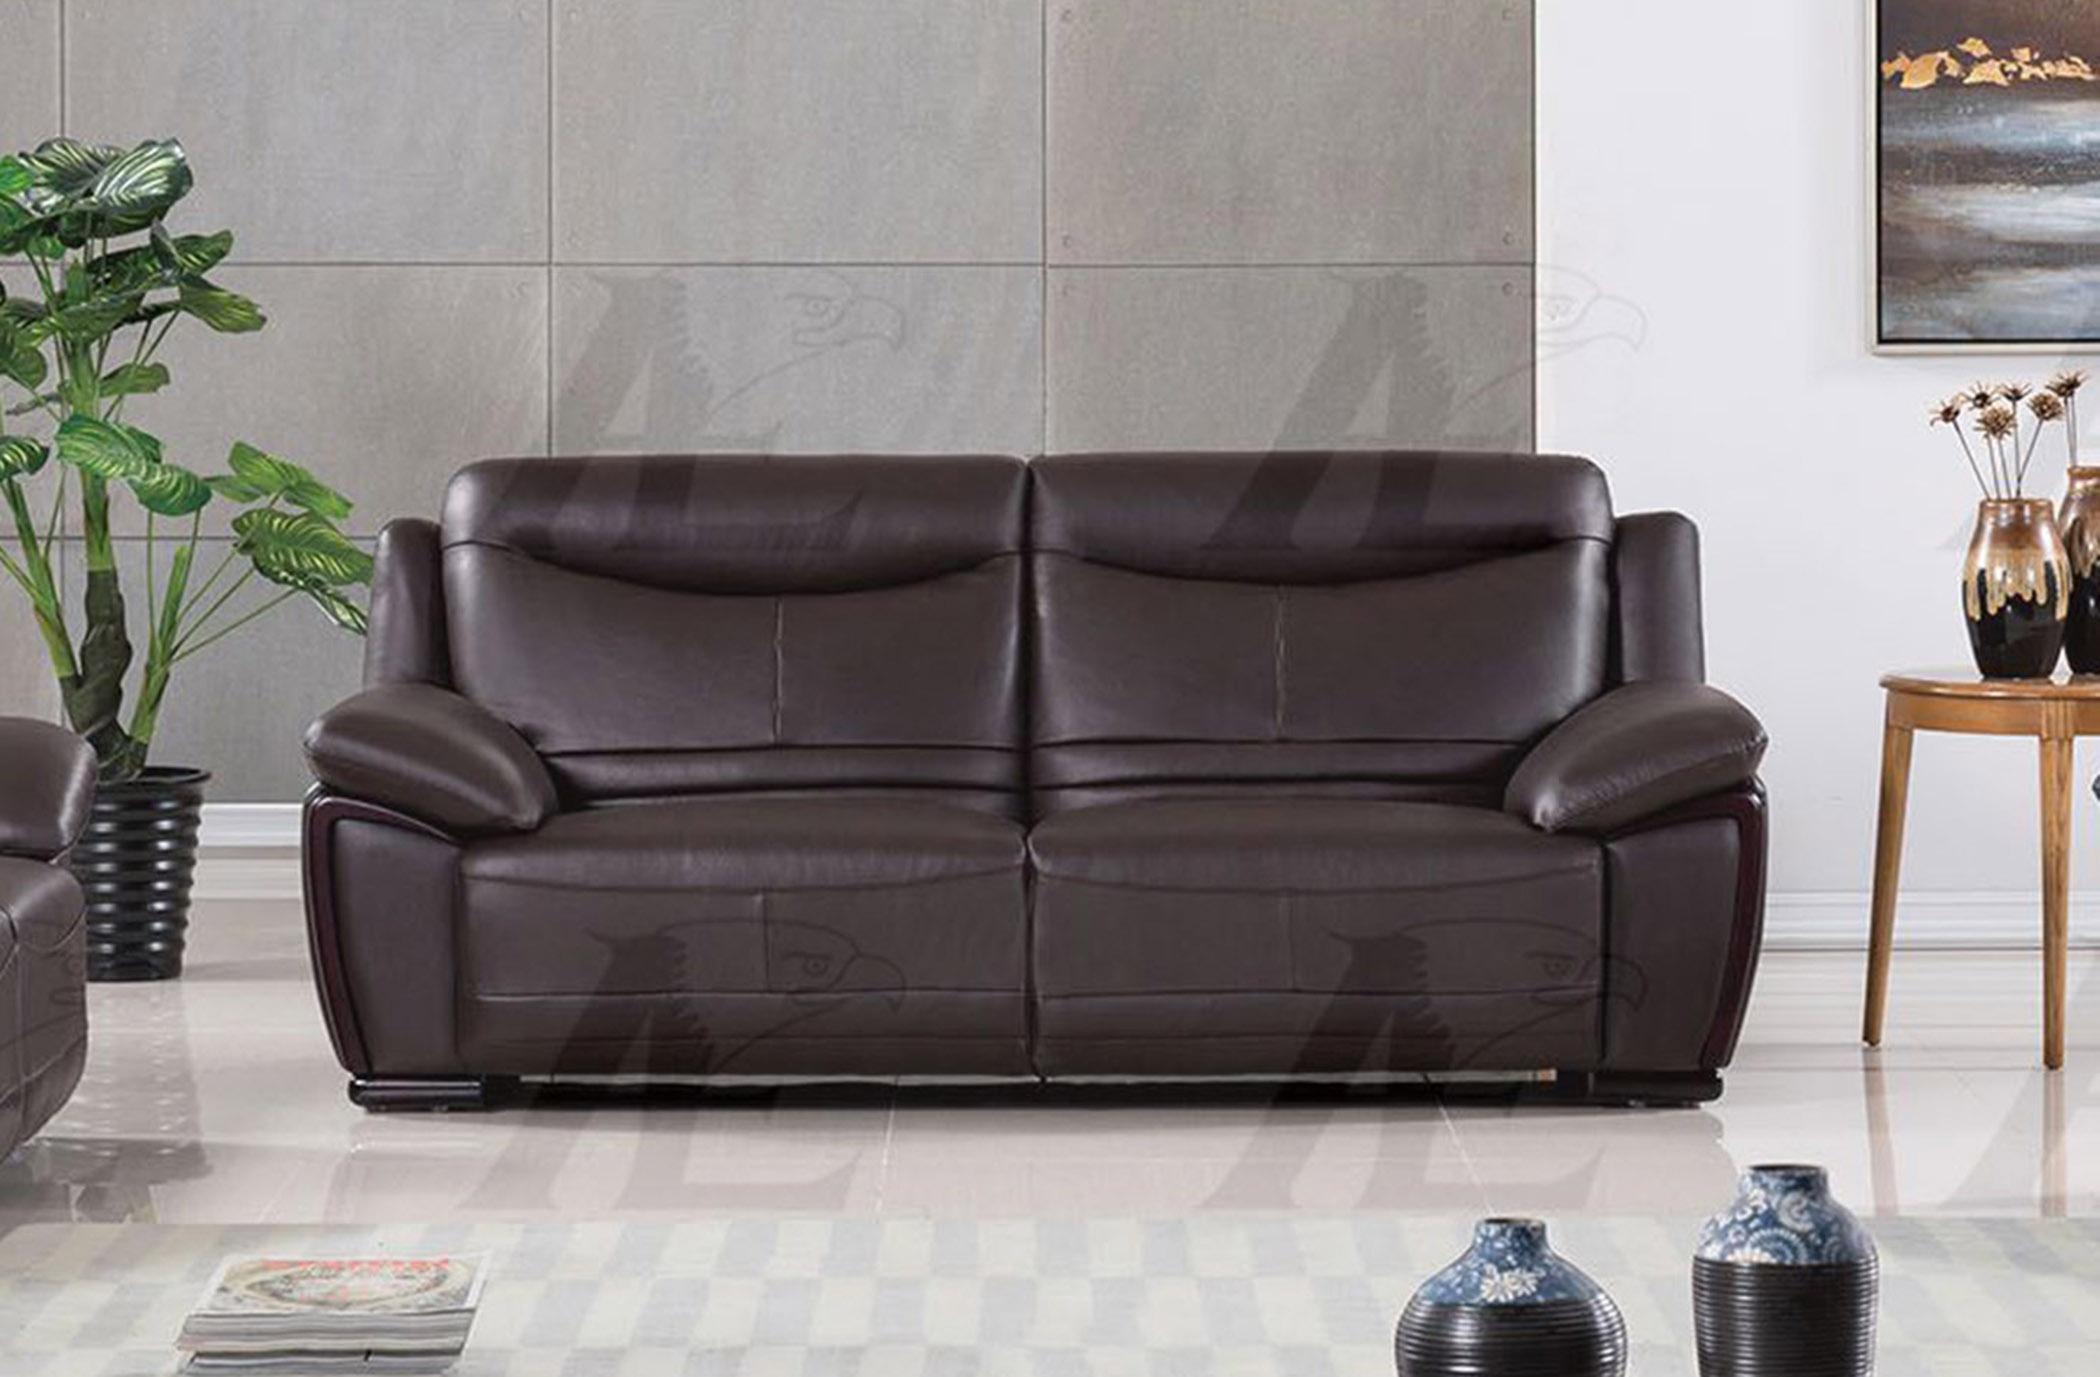 

    
American Eagle Furniture EK-B308-DC Dark Chocolate Sofa  Genuine Leather
